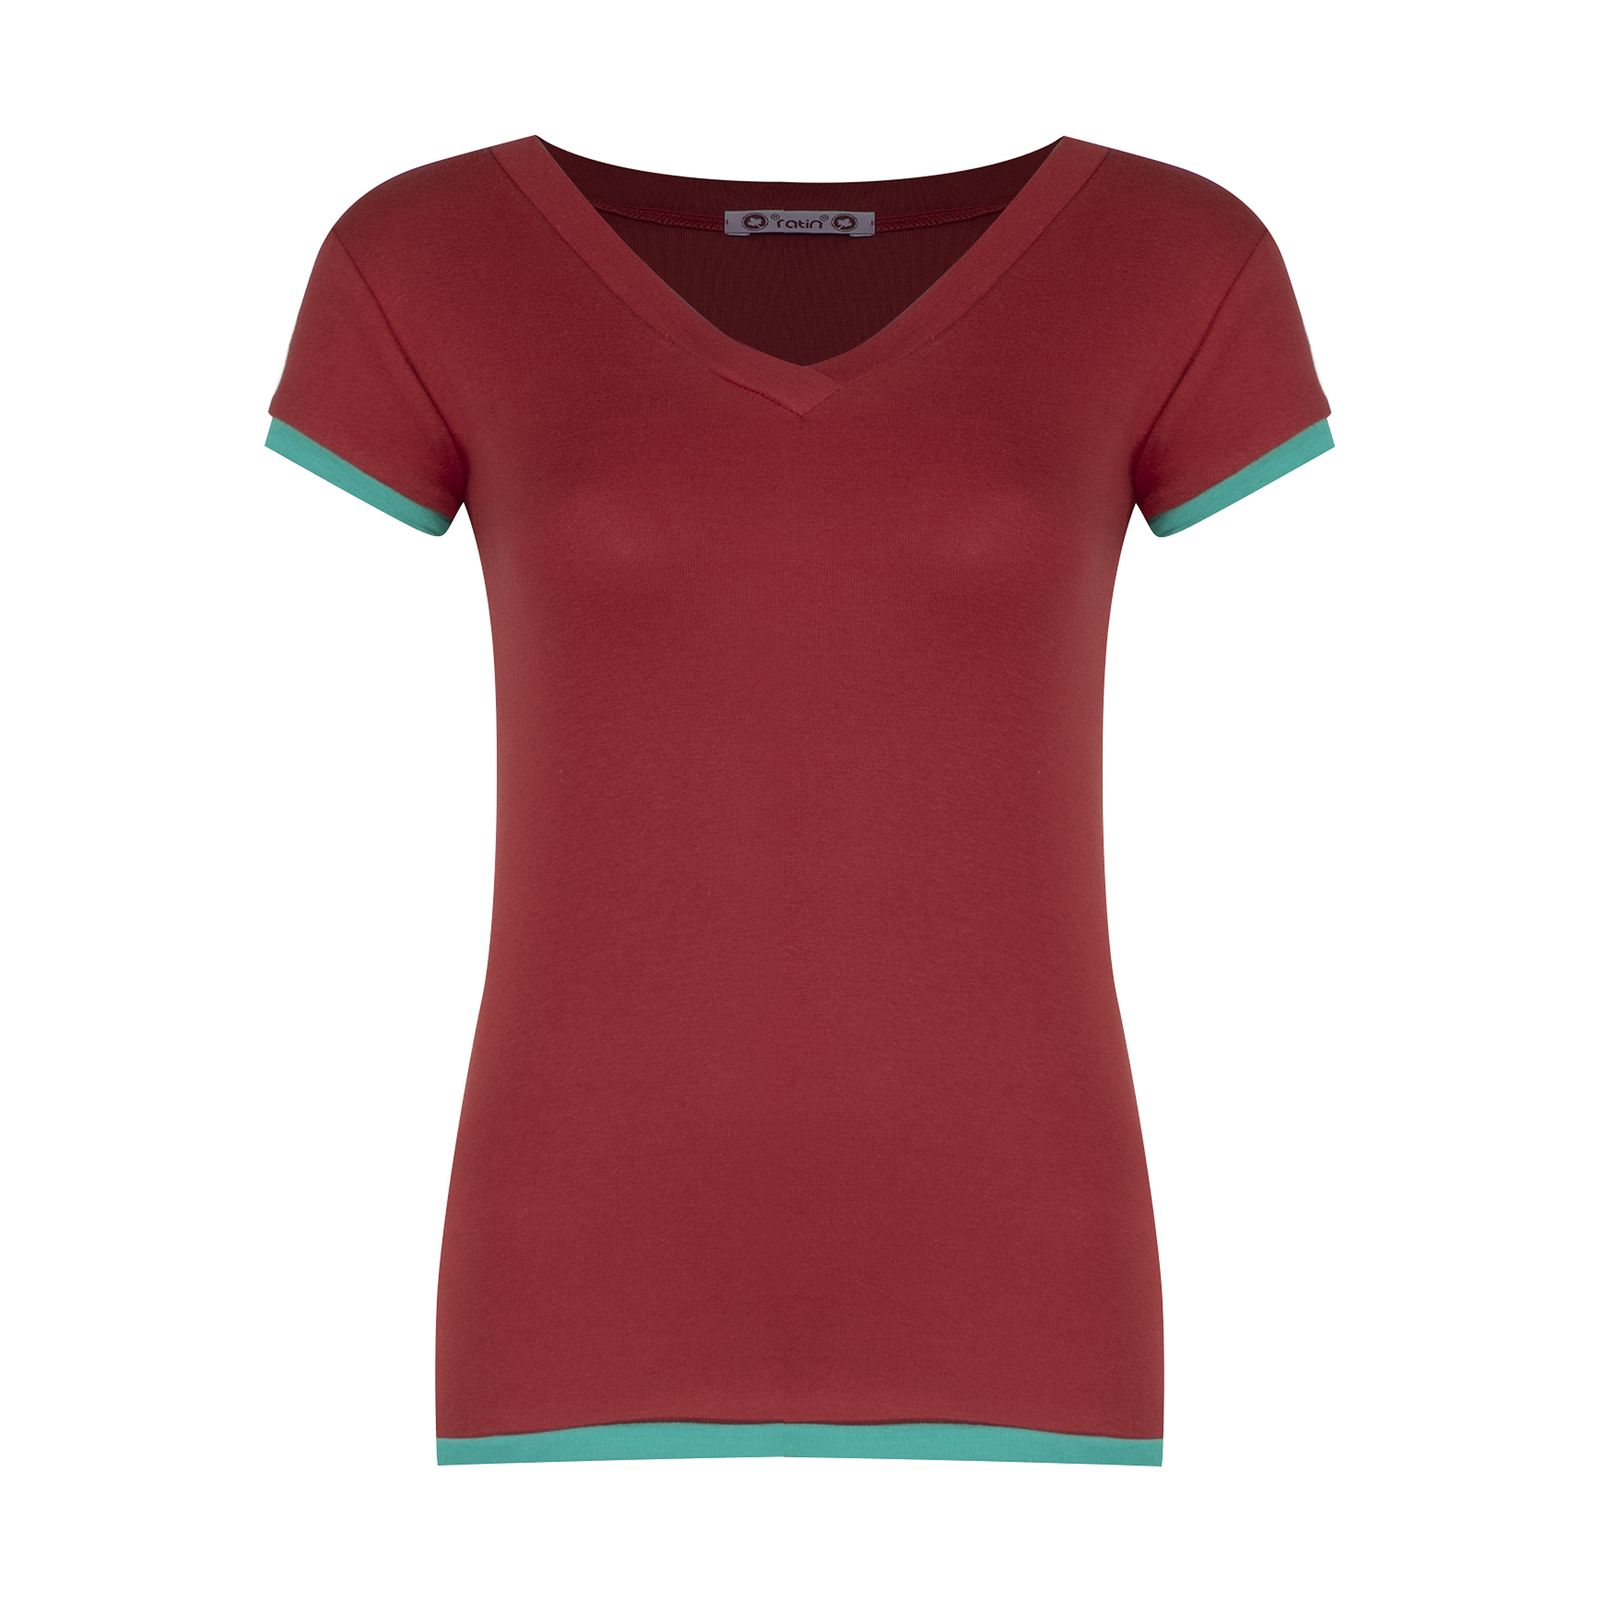 تی شرت زنانه افراتین کد 2556 رنگ قرمز -  - 1